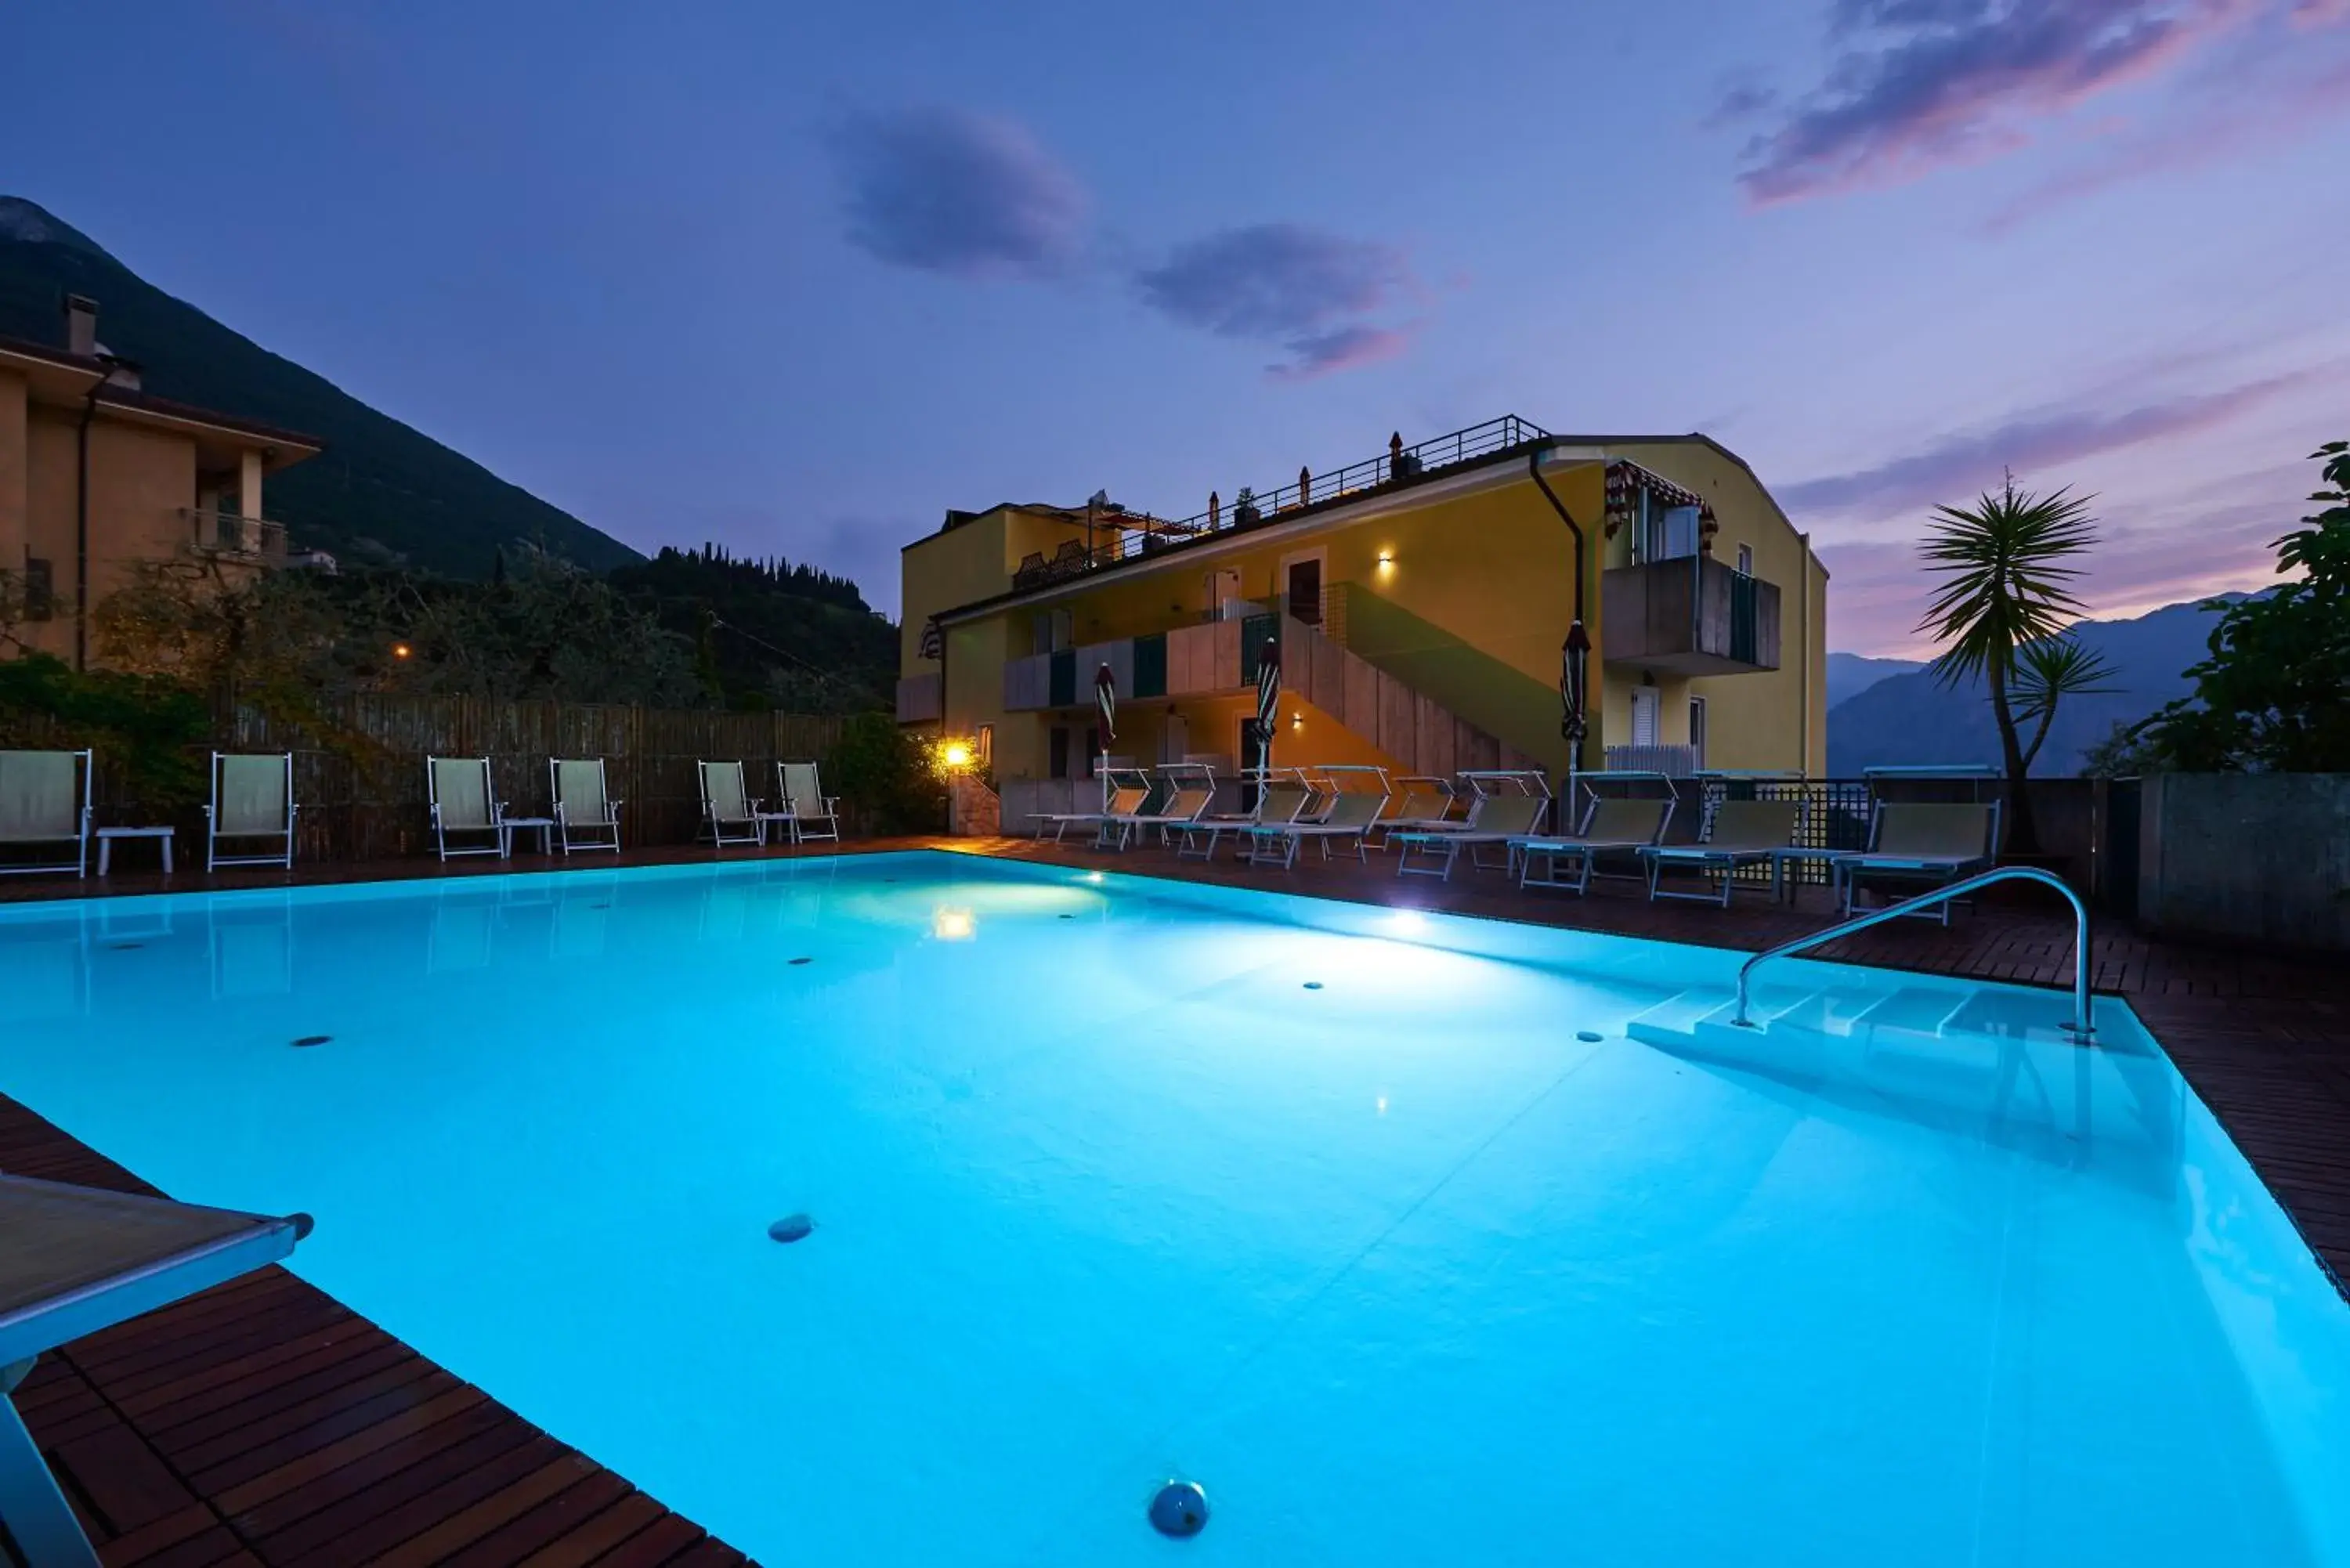 Swimming Pool in Hotel Villa Smeralda